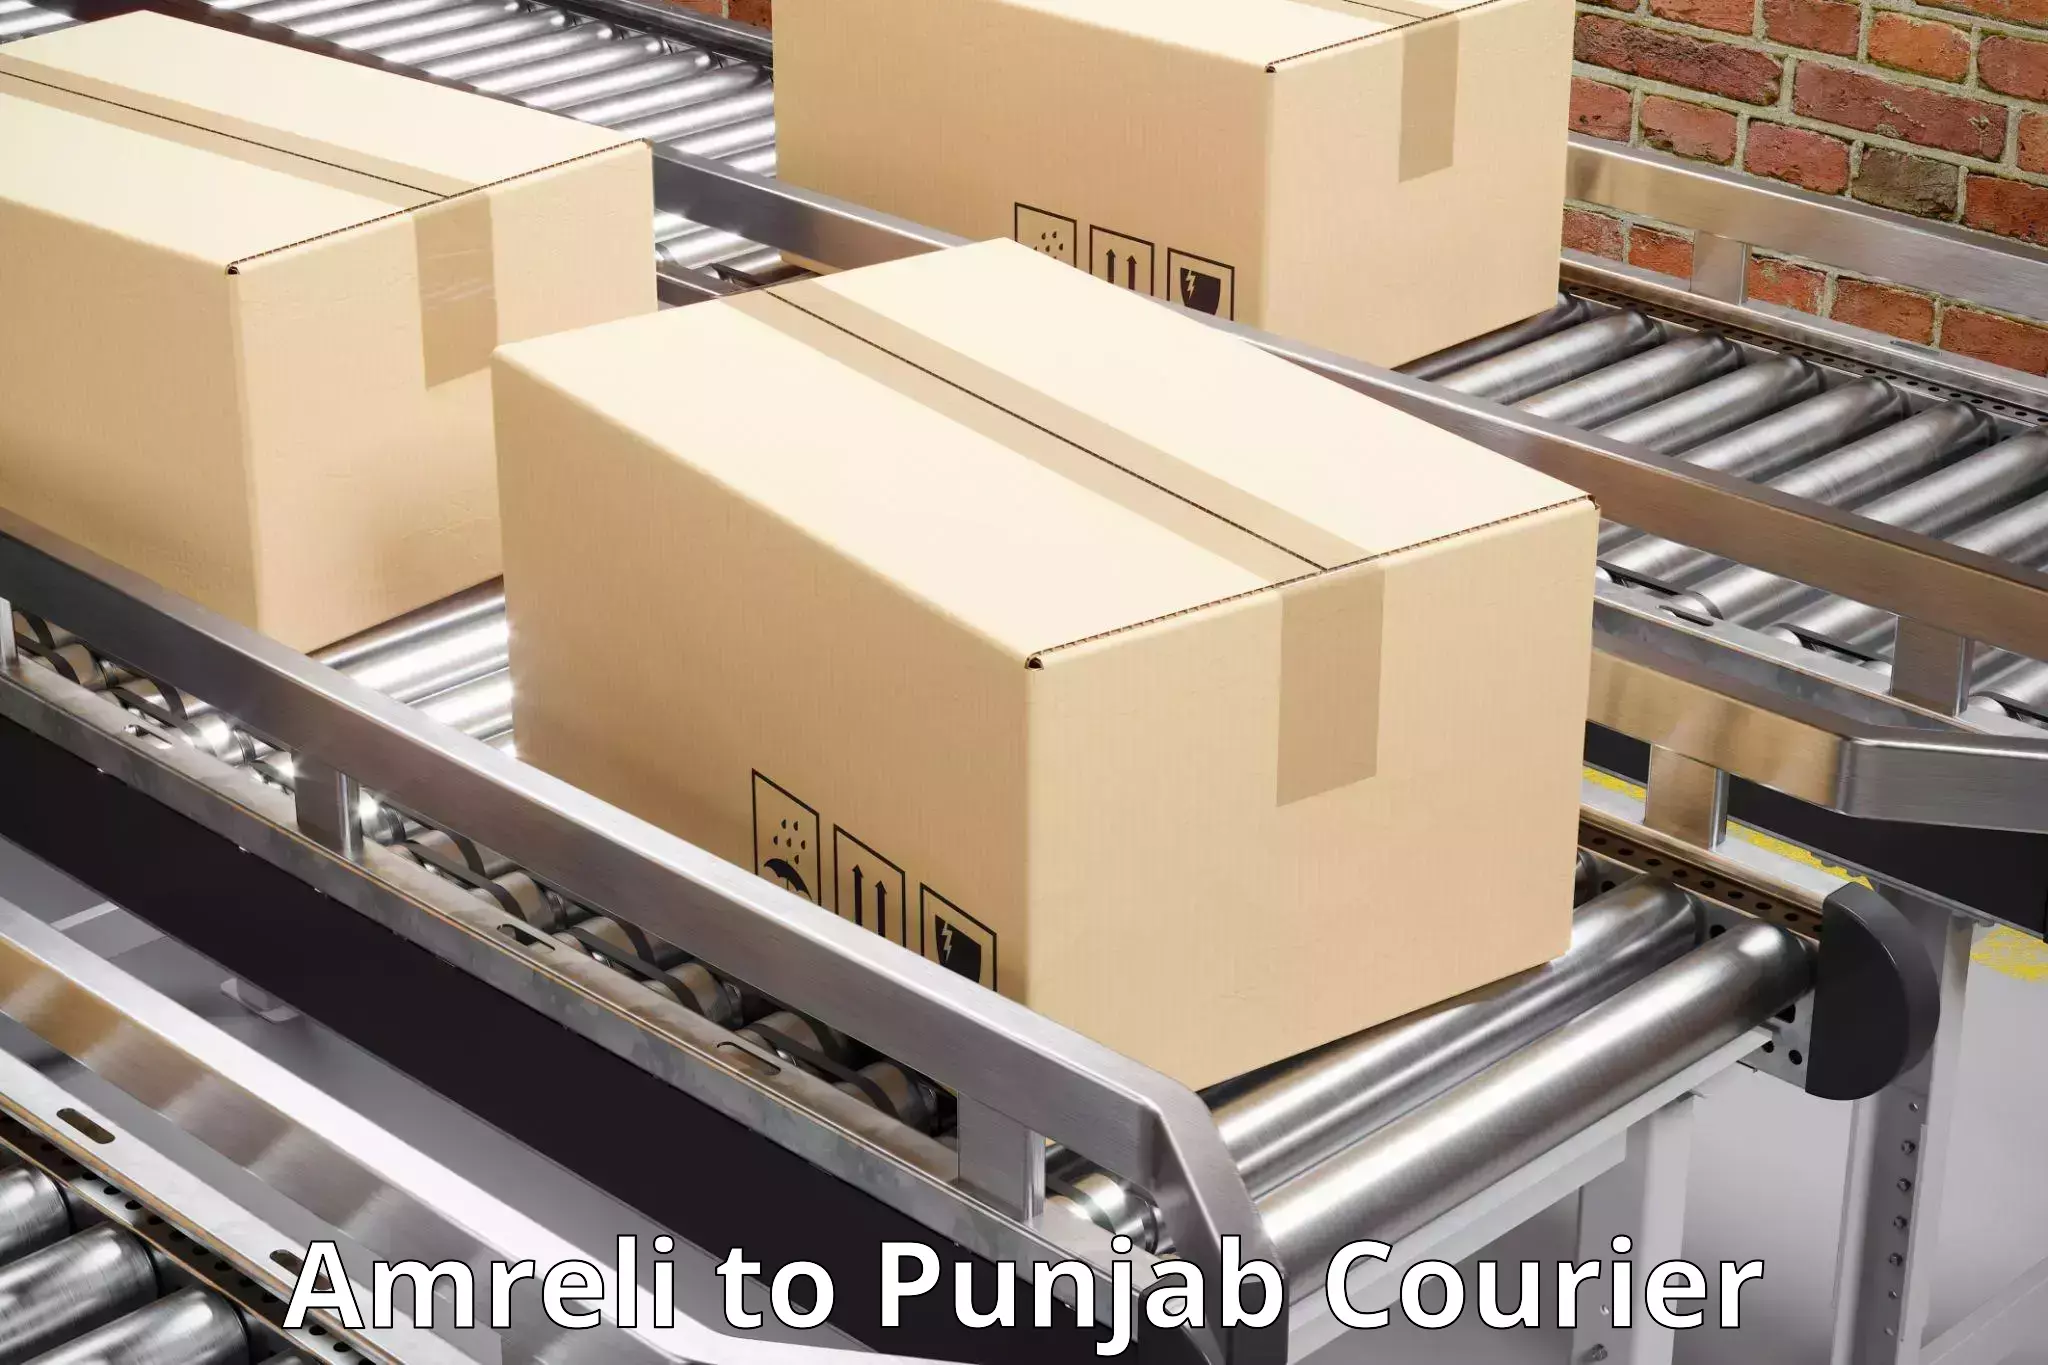 On-demand shipping options Amreli to Amritsar